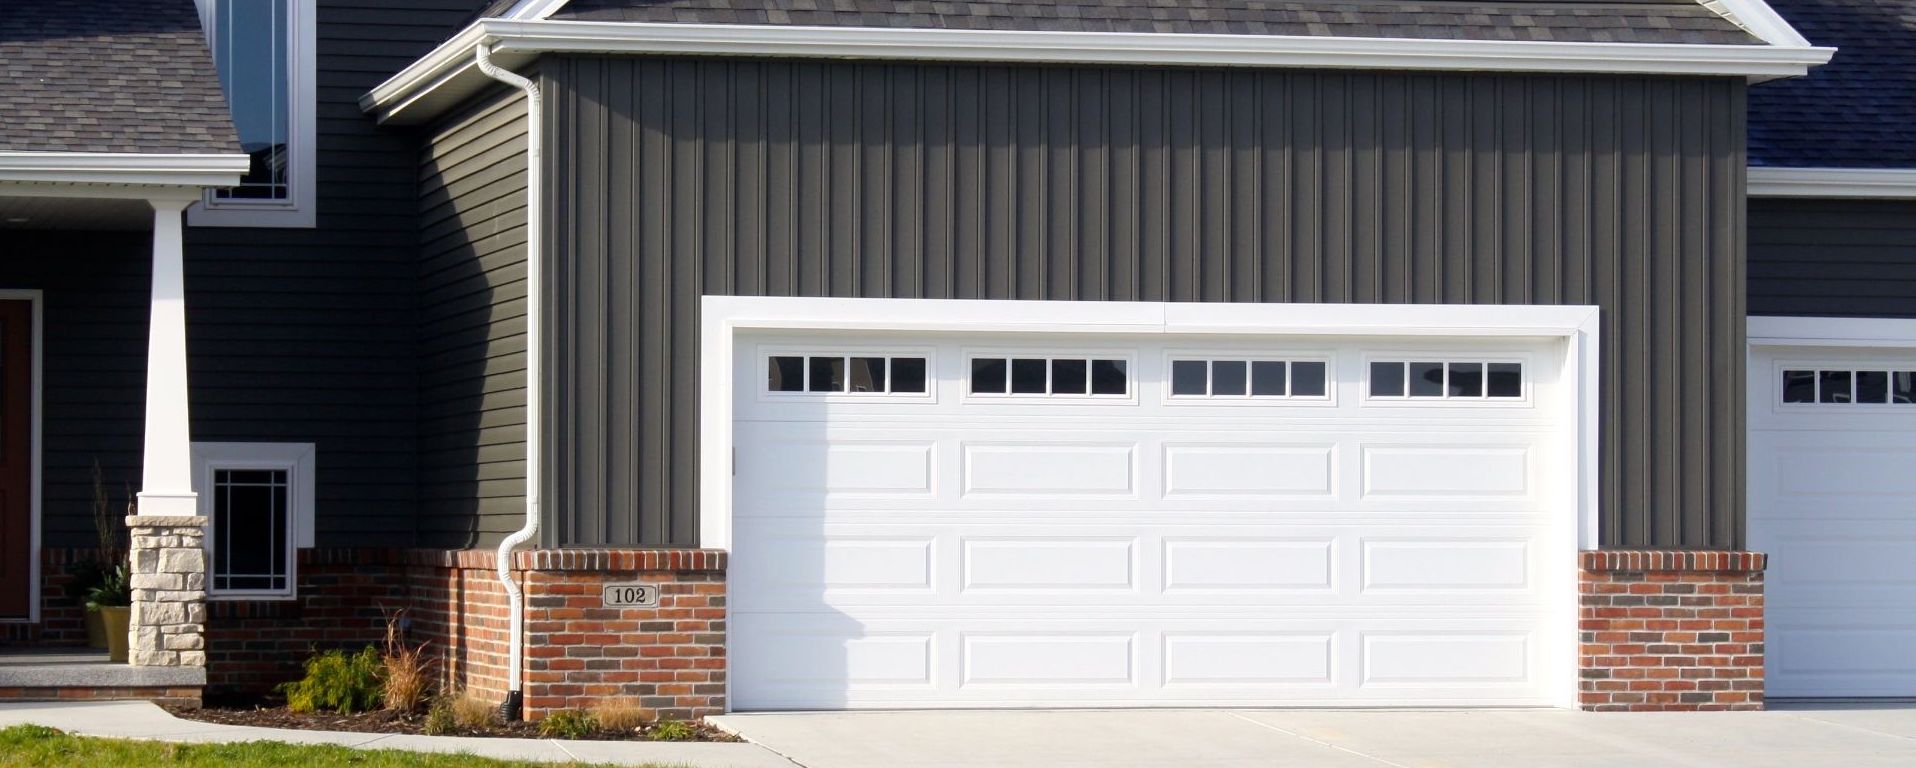 How to Choose the Best 24 Hour Garage Door Service Near Me in